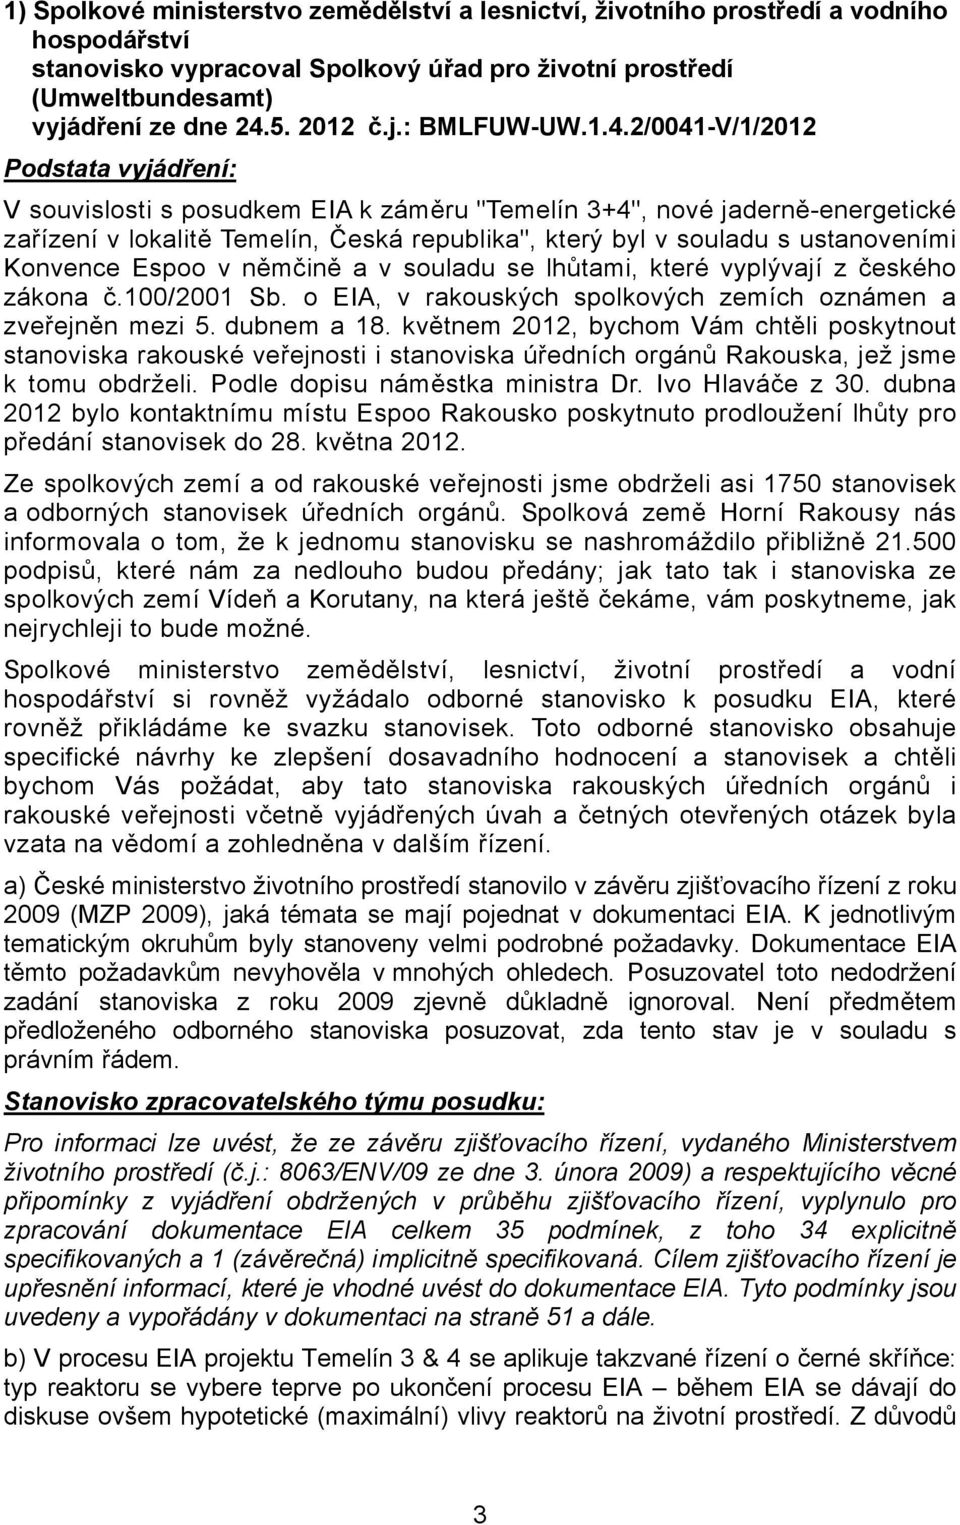 2/0041-V/1/2012 Podstata vyjádření: V souvislosti s posudkem EIA k záměru "Temelín 3+4", nové jaderně-energetické zařízení v lokalitě Temelín, Česká republika", který byl v souladu s ustanoveními